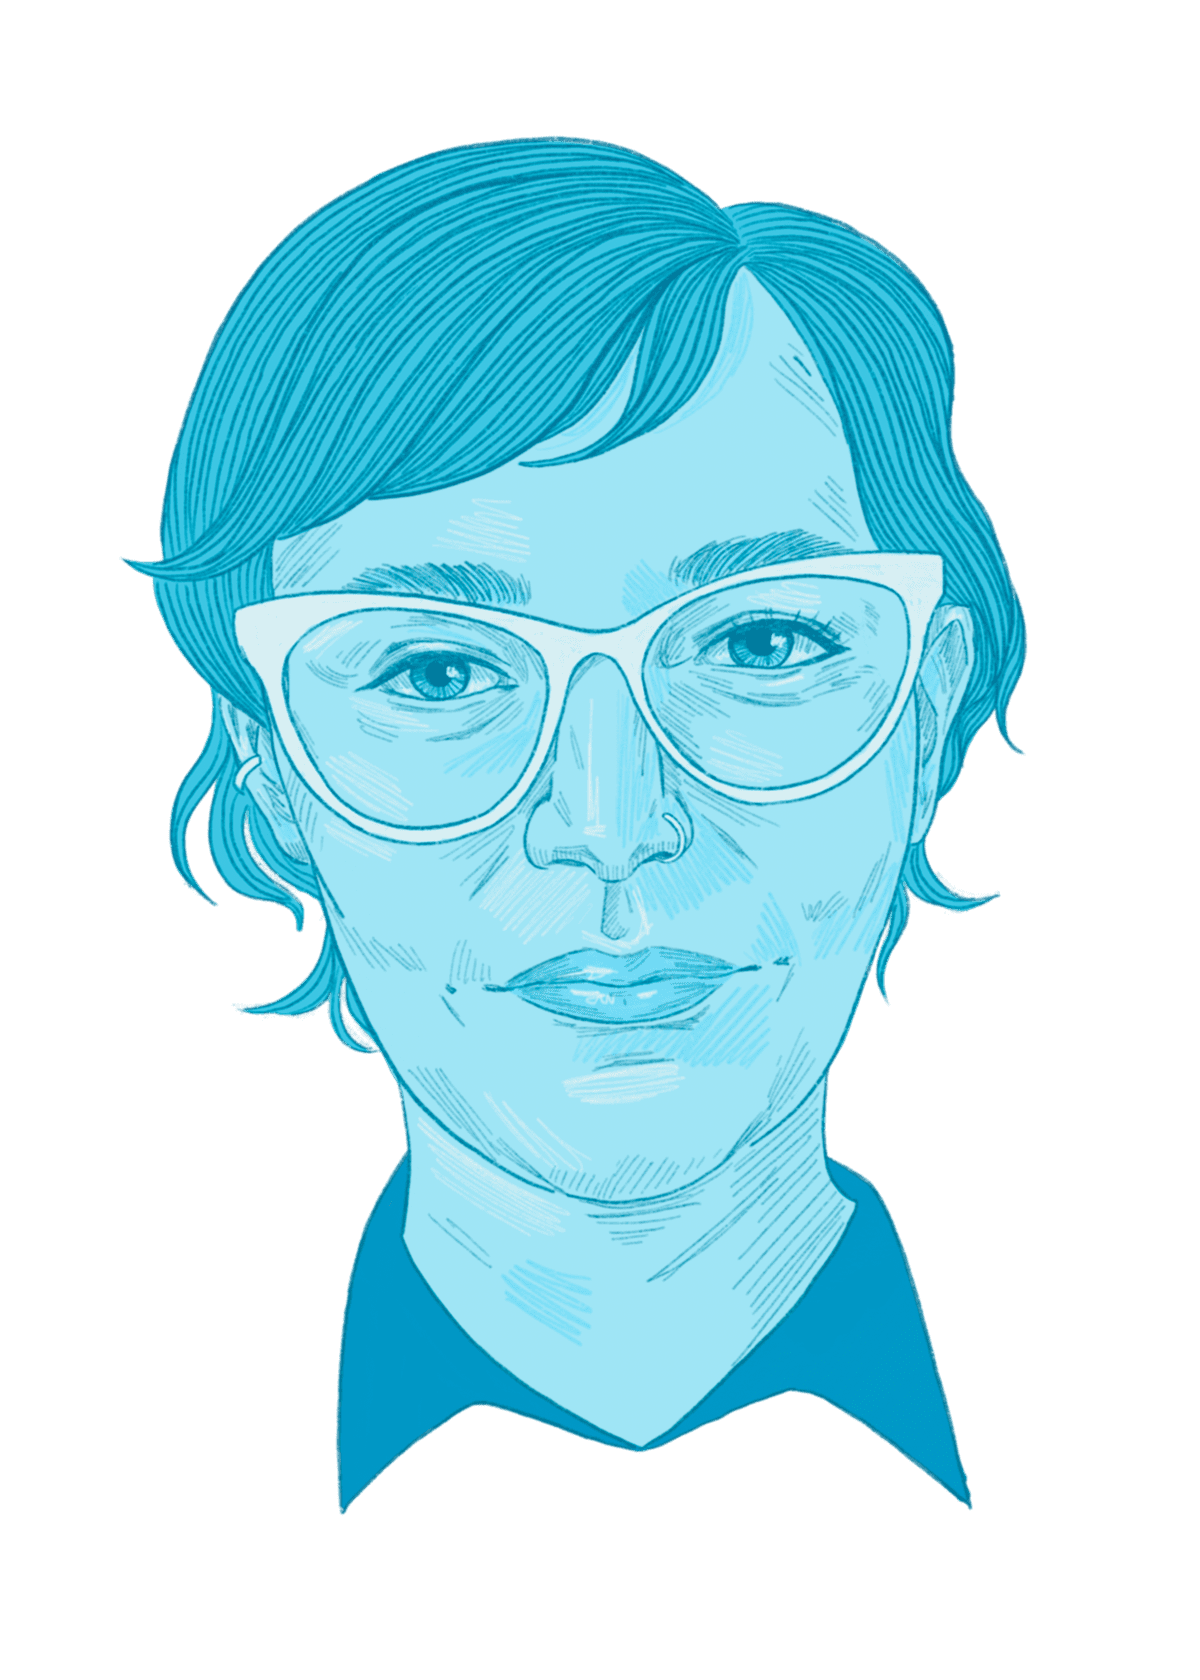 Illustrated portrait of Dr. Christina Bourne